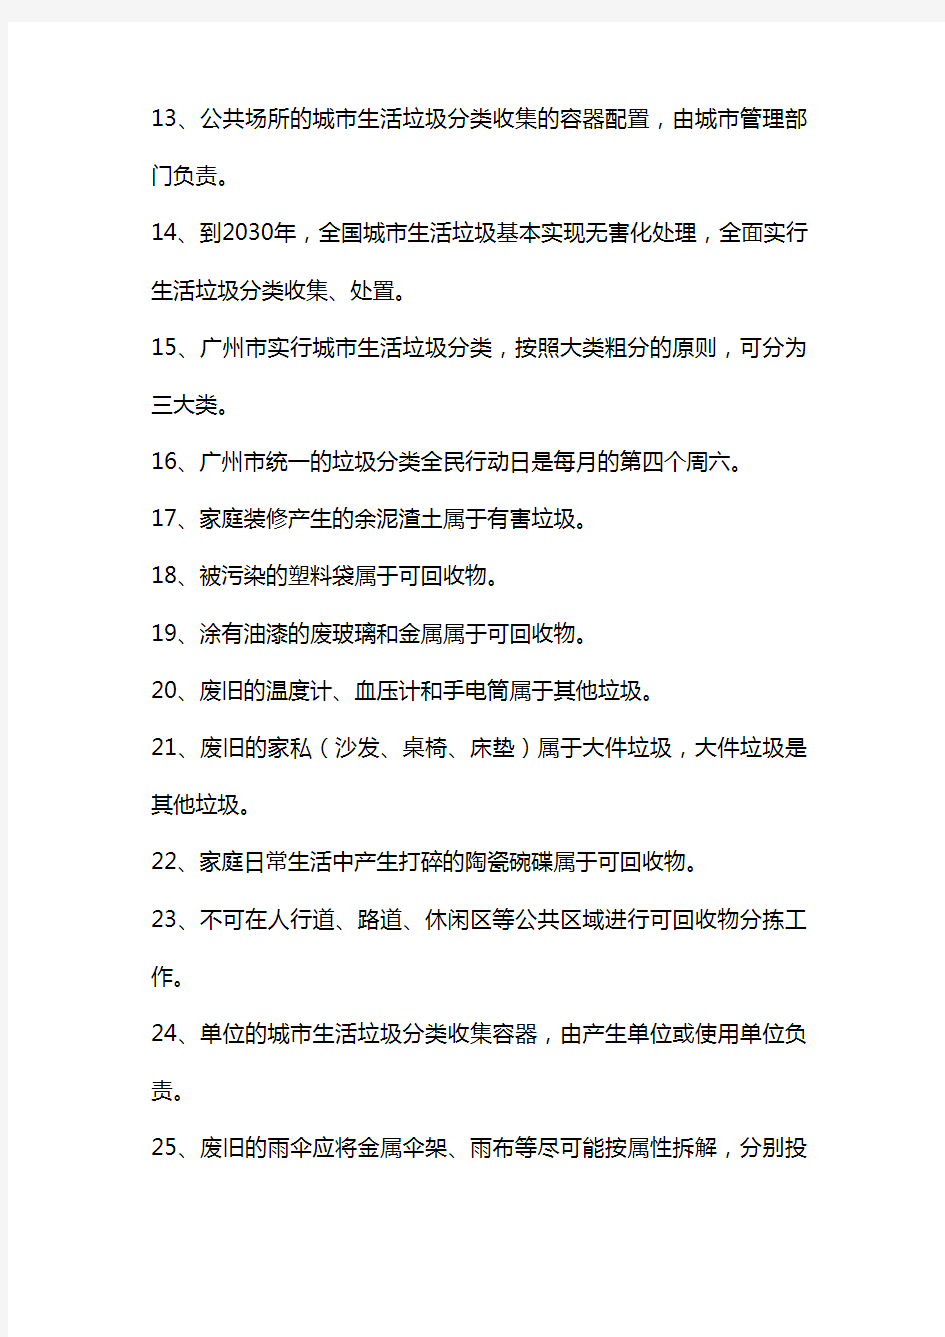 2013广州市生活垃圾分类知识网络答题